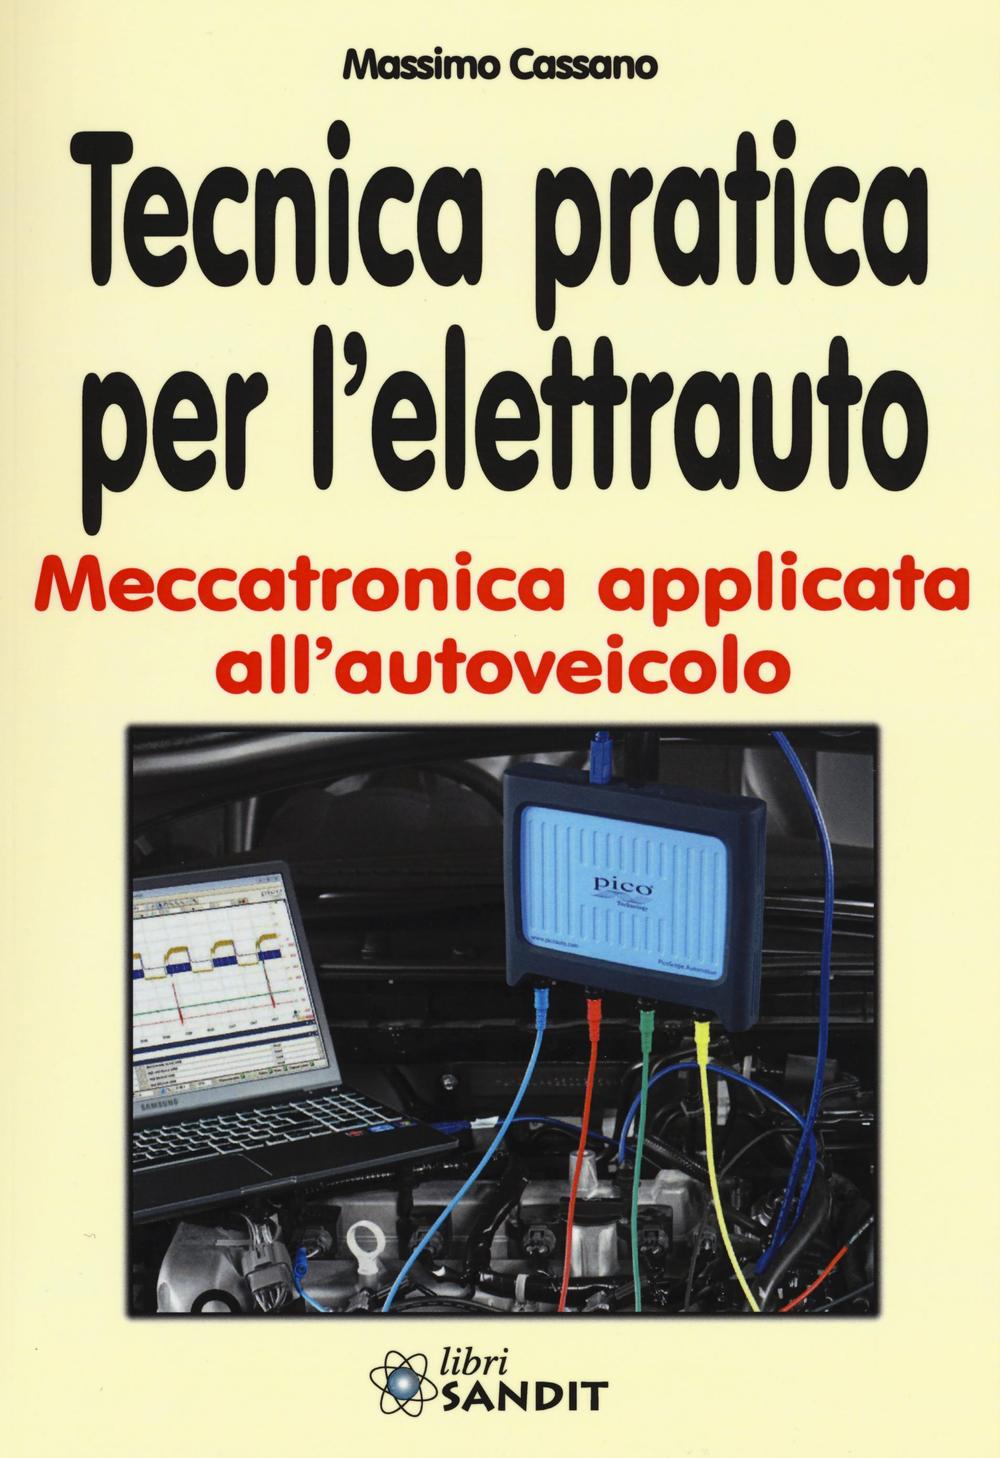 Kniha Tecnica pratica per l'elettrauto. Meccatronica applicata all'autoveicolo Massimo Cassano